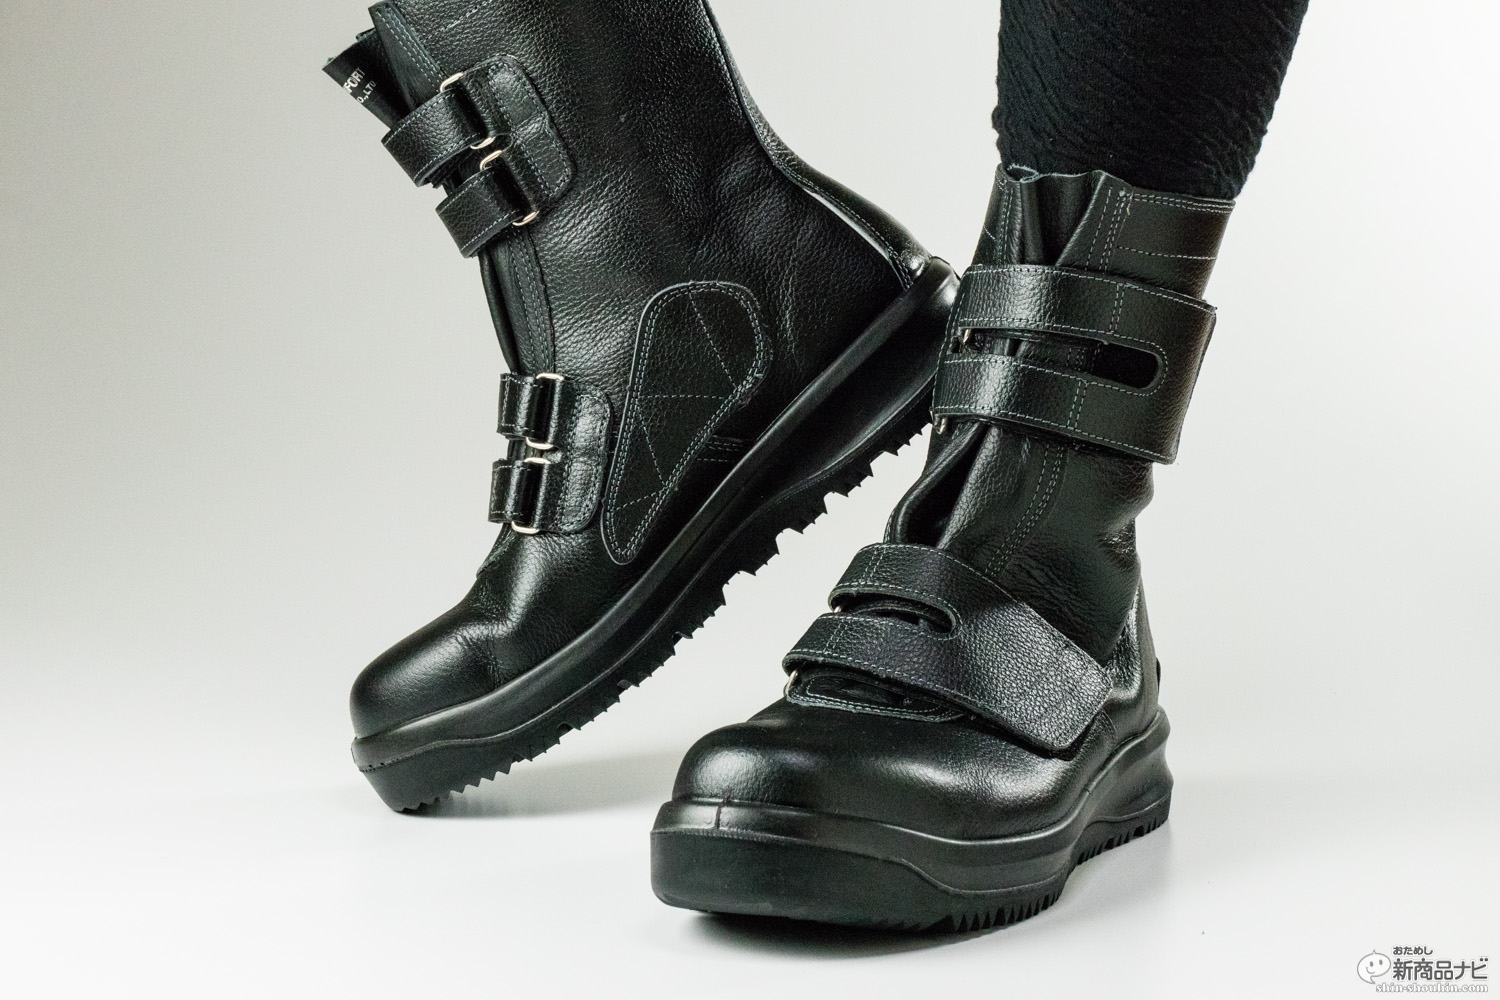 ミドリ安全『オールラウンダー』安全靴のイメージを一変させるオシャレなシューズは街履きでも使える！ | おためし新商品ナビ